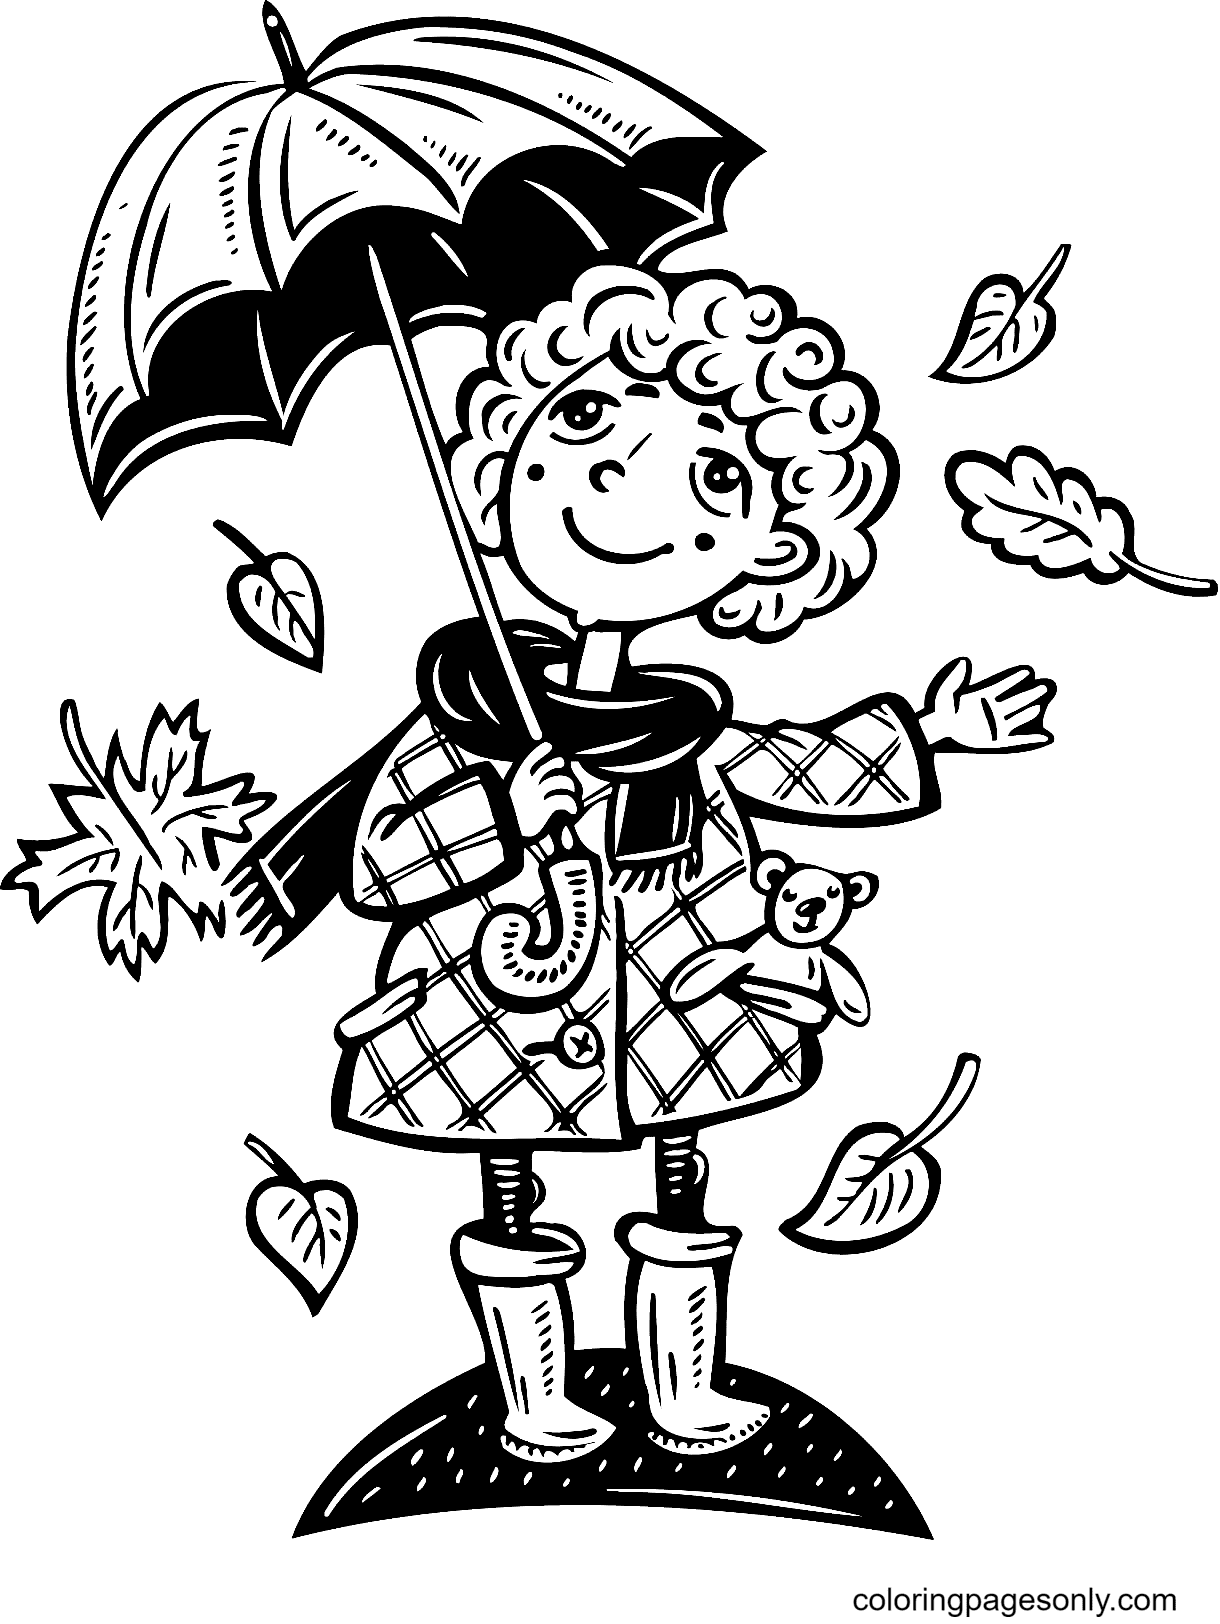 Meisje houdt een paraplu vast met bladeren die uit de herfstbladeren vallen